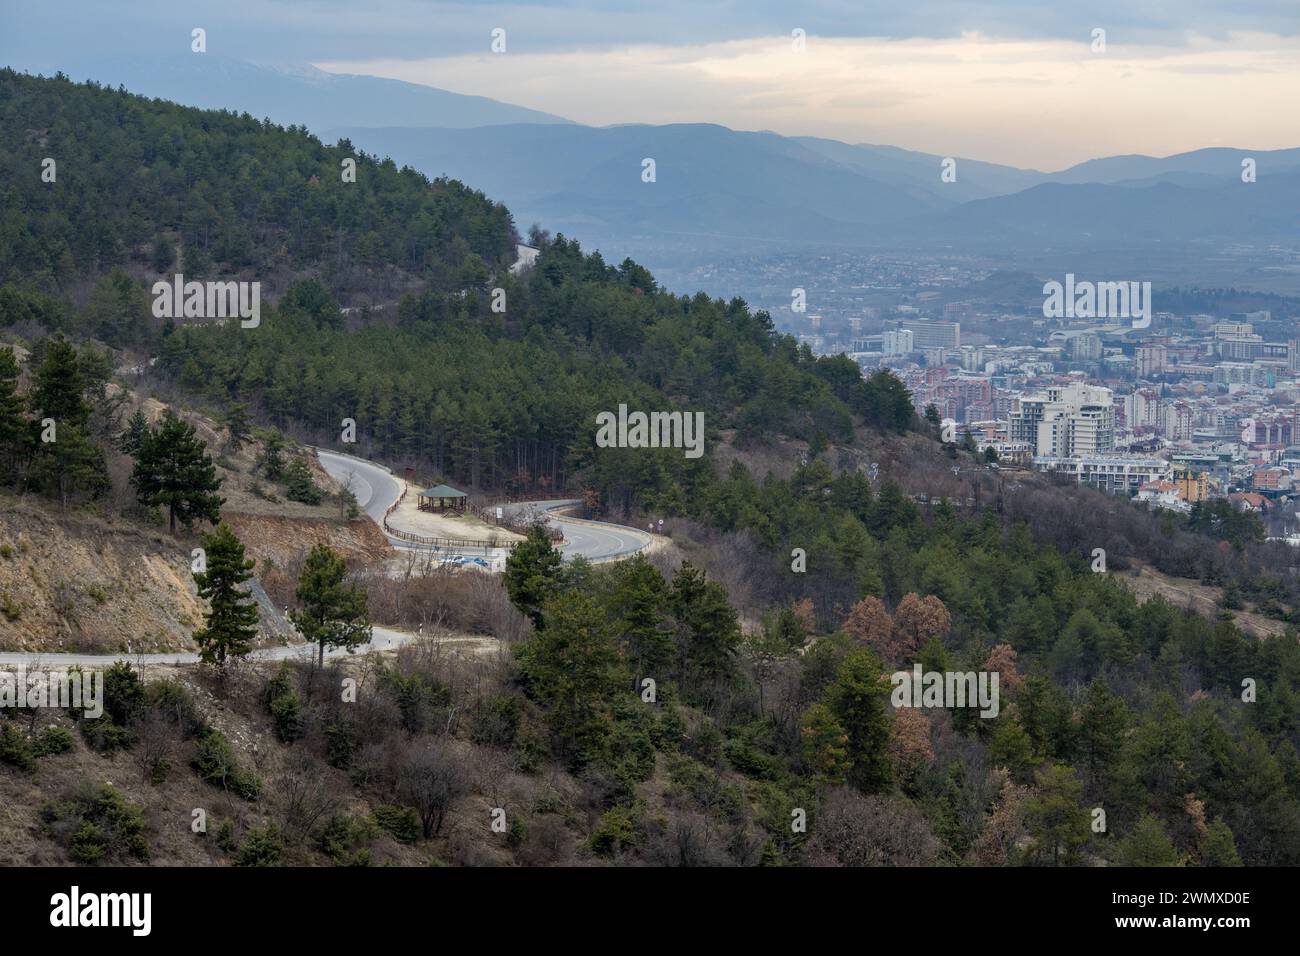 Europäische Bergstadt von oben gesehen bei Sonnenuntergang an einem bewölkten Tag, Skopje, die Hauptstadt. Stockfoto